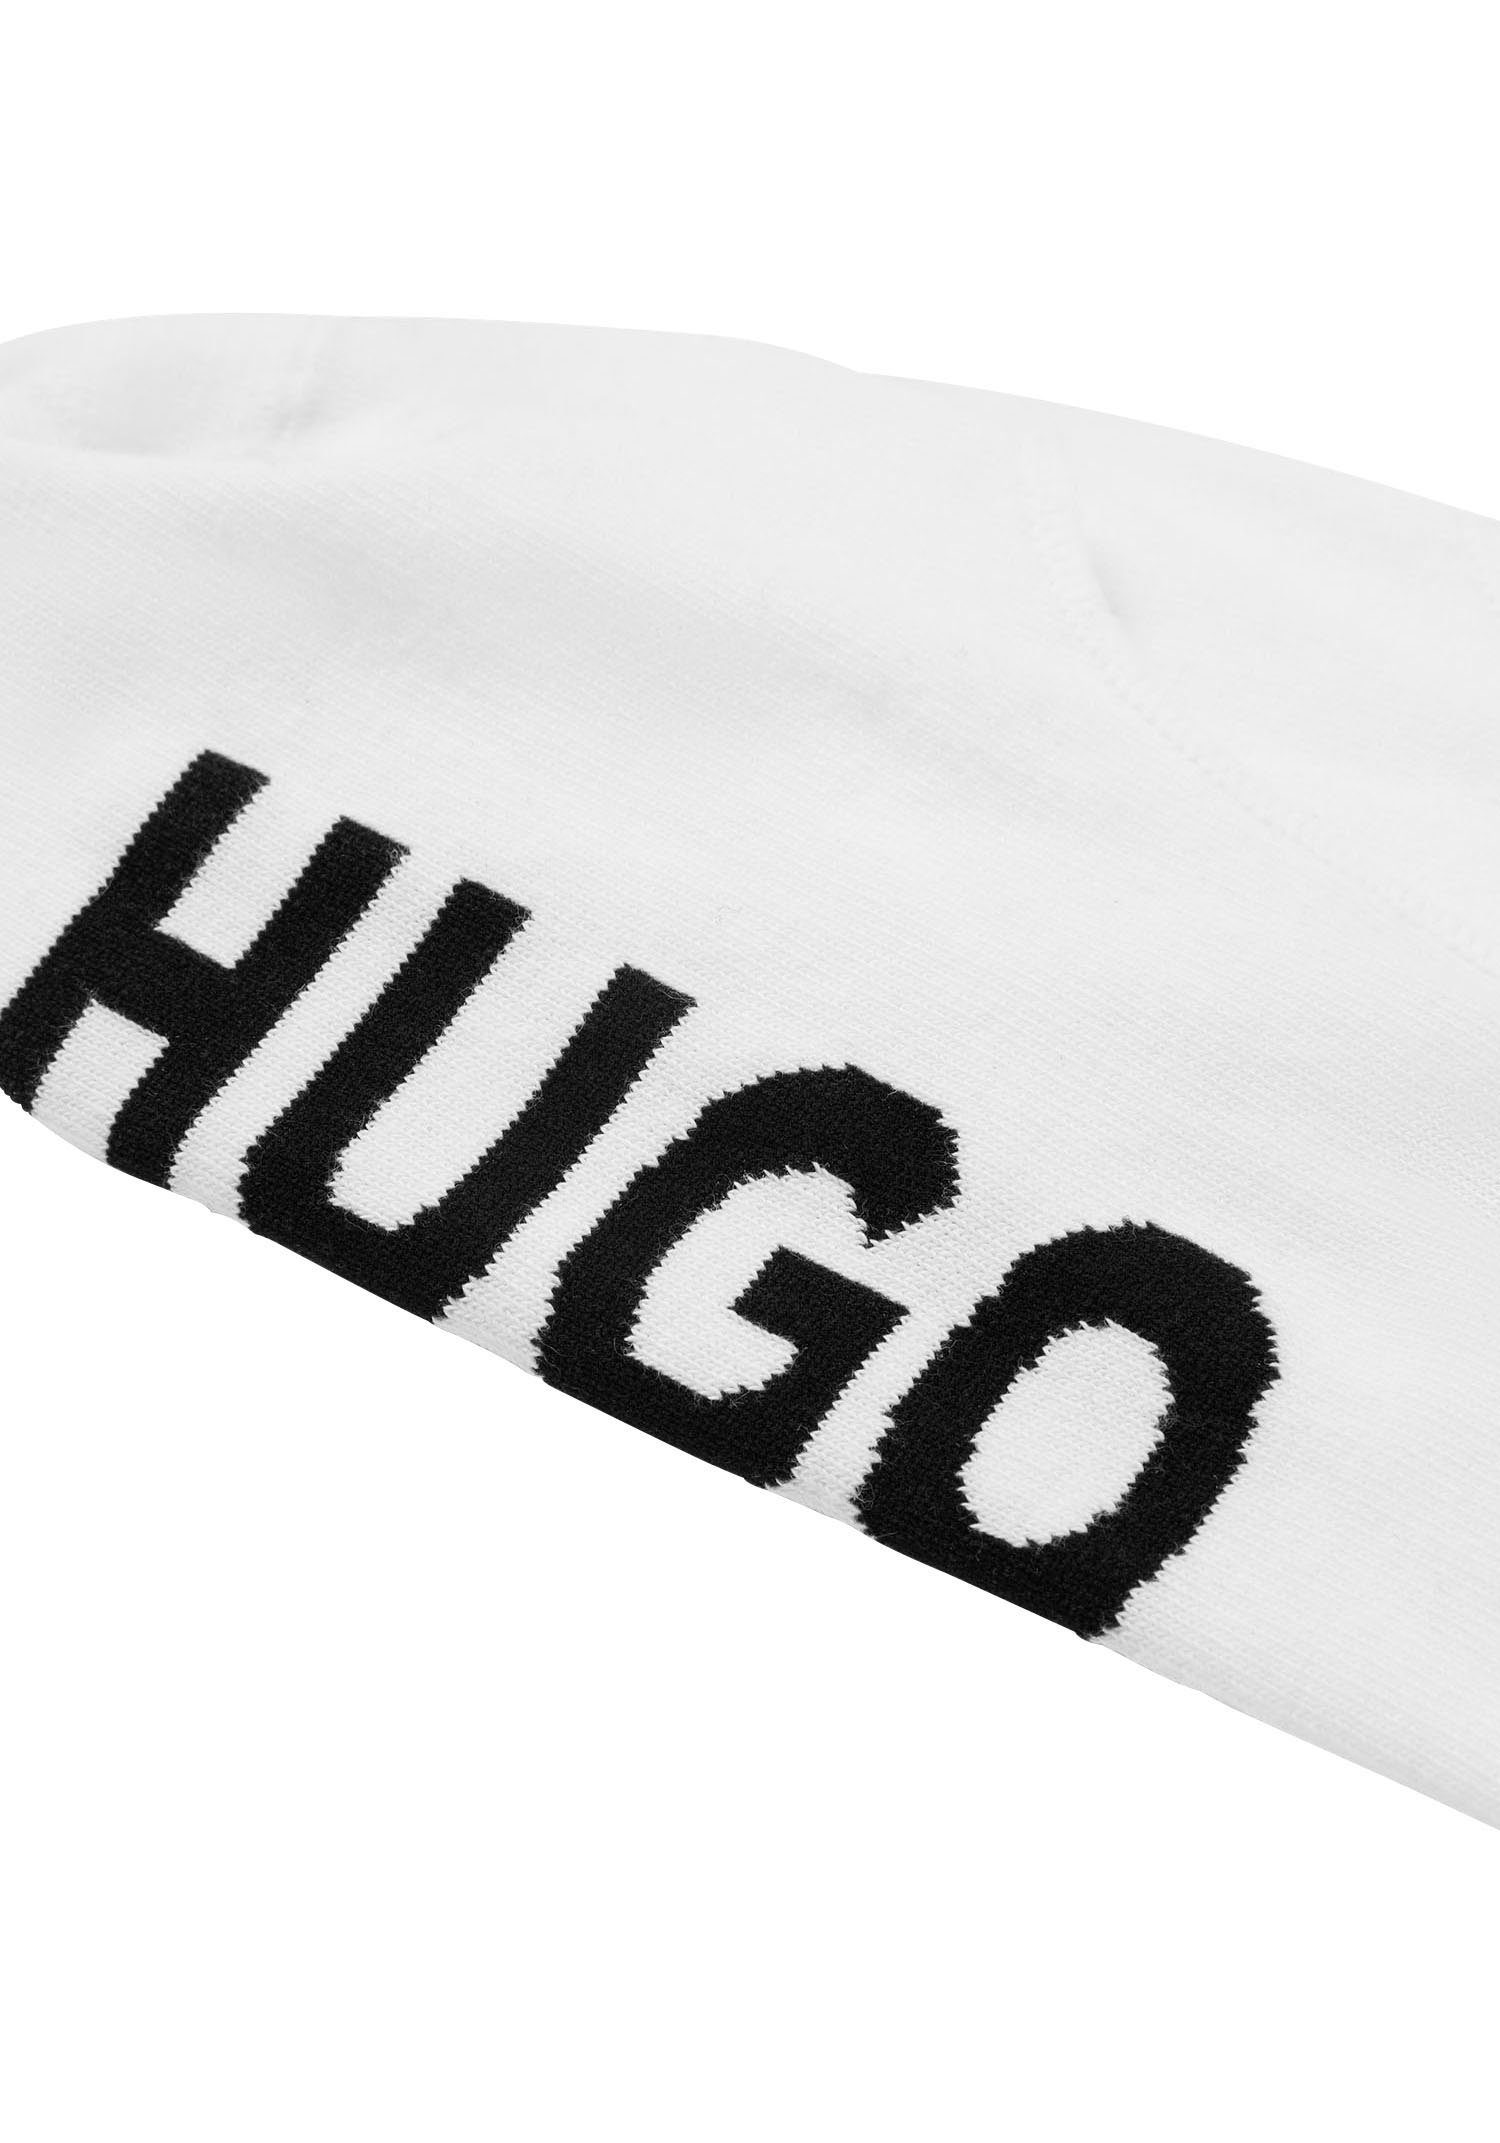 LOGO 2-Paar) HUGO SL Sneakersocken white 2P (Packung, CC